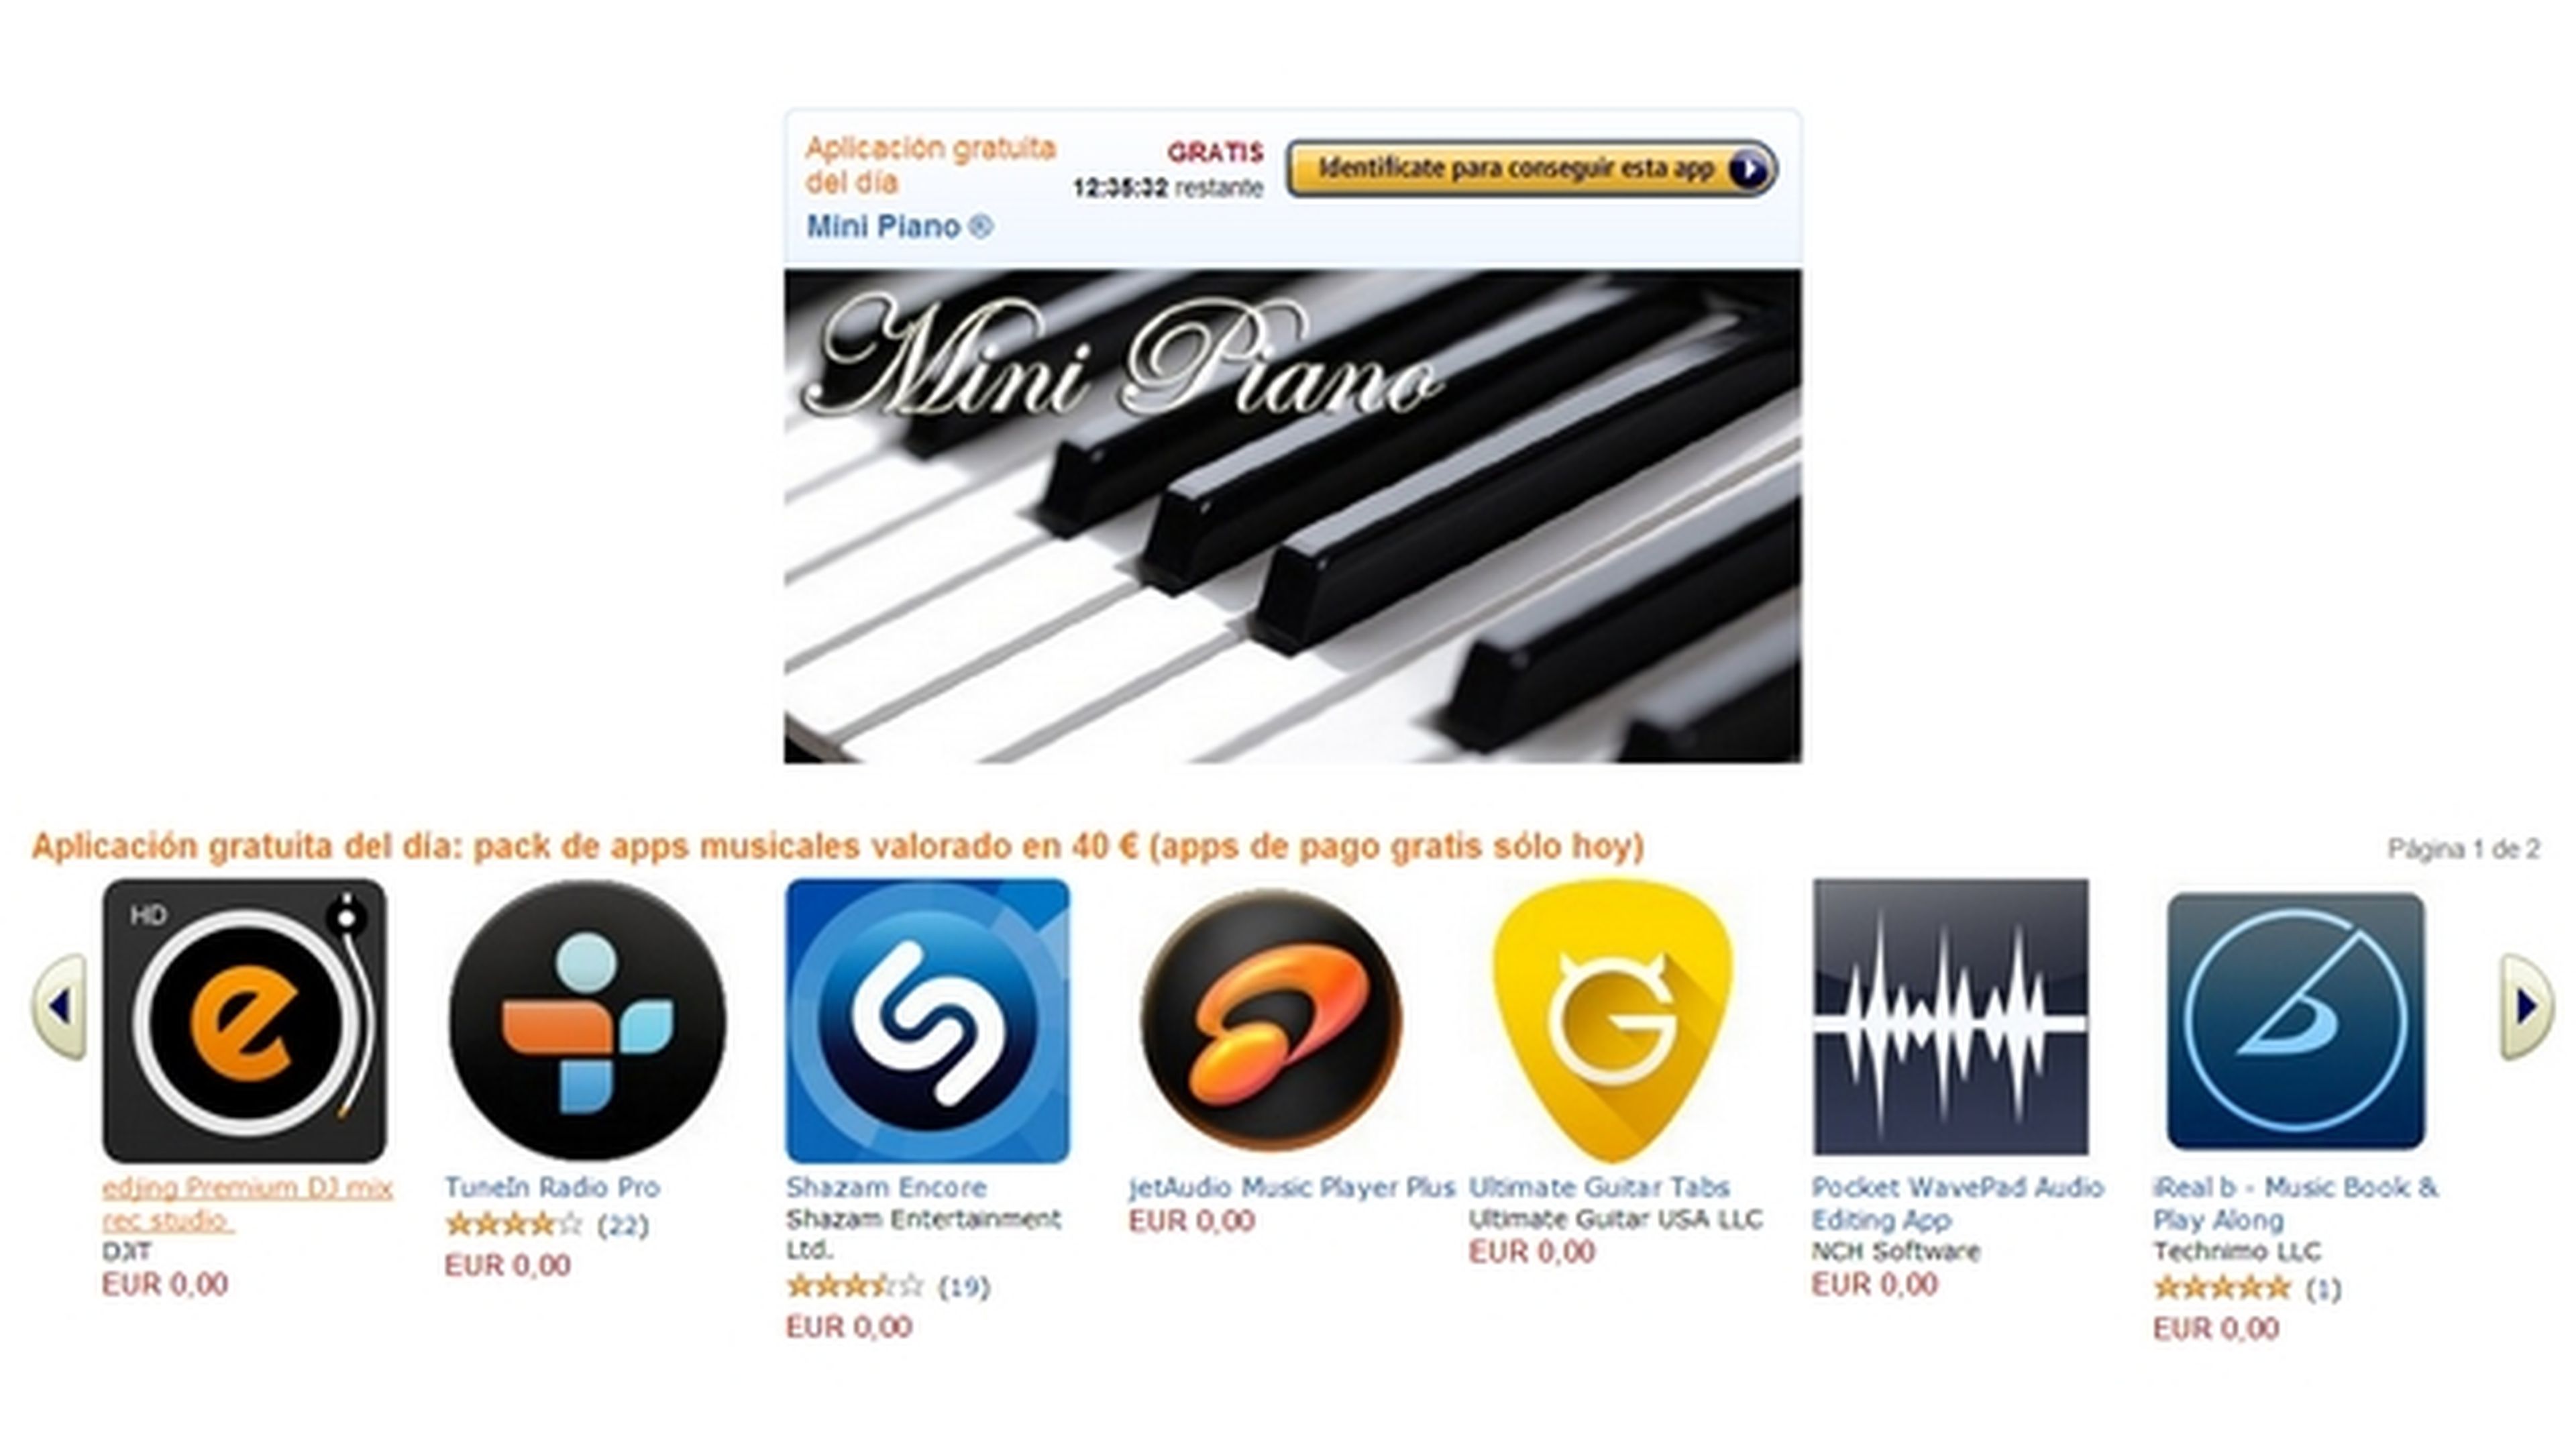 Apps gratis de música por valor de 40 € en la Tienda Apps para Android de Amazon, sólo hoy